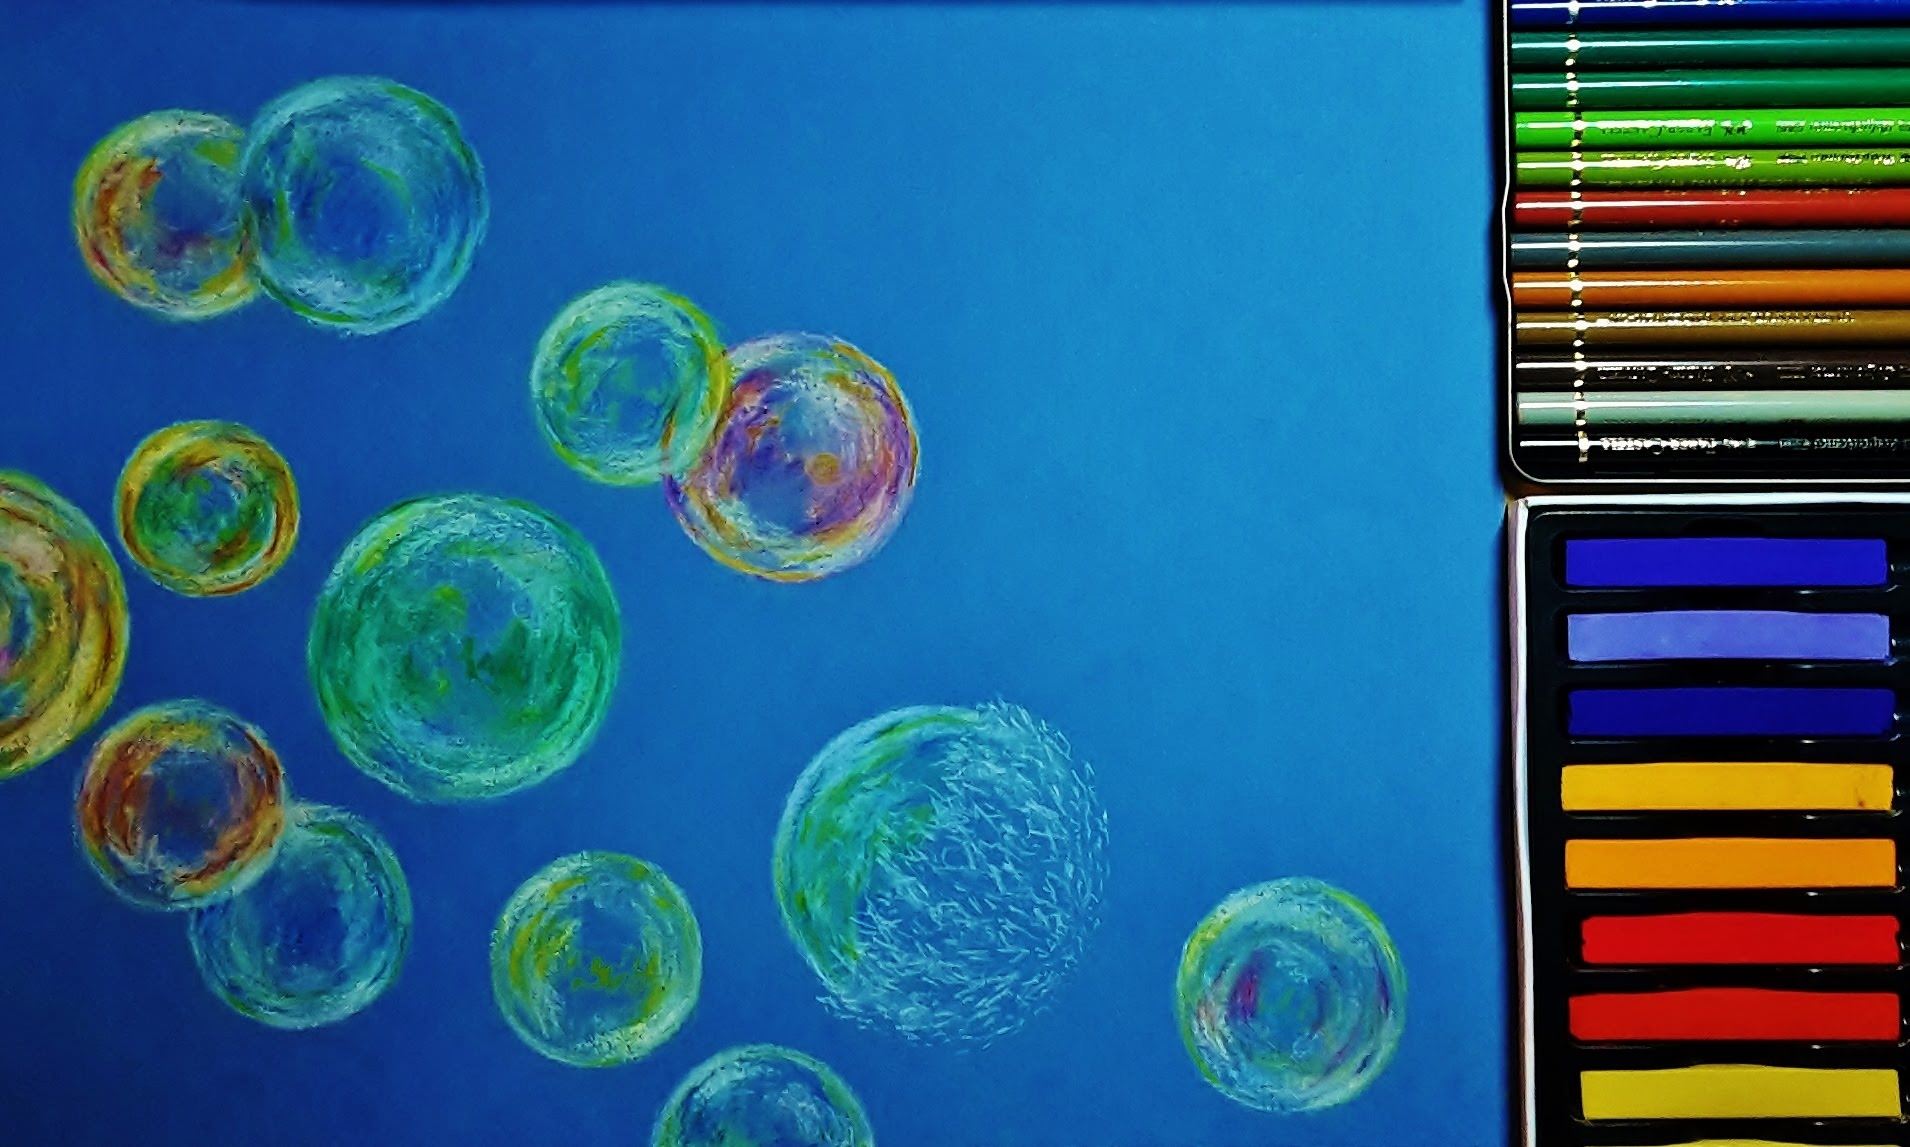 Движение пятен. Граттаж мыльные пузыри. Мыльные пузыри. Рисование мыльными пузырями. Мыльные пузыри цветными карандашами.